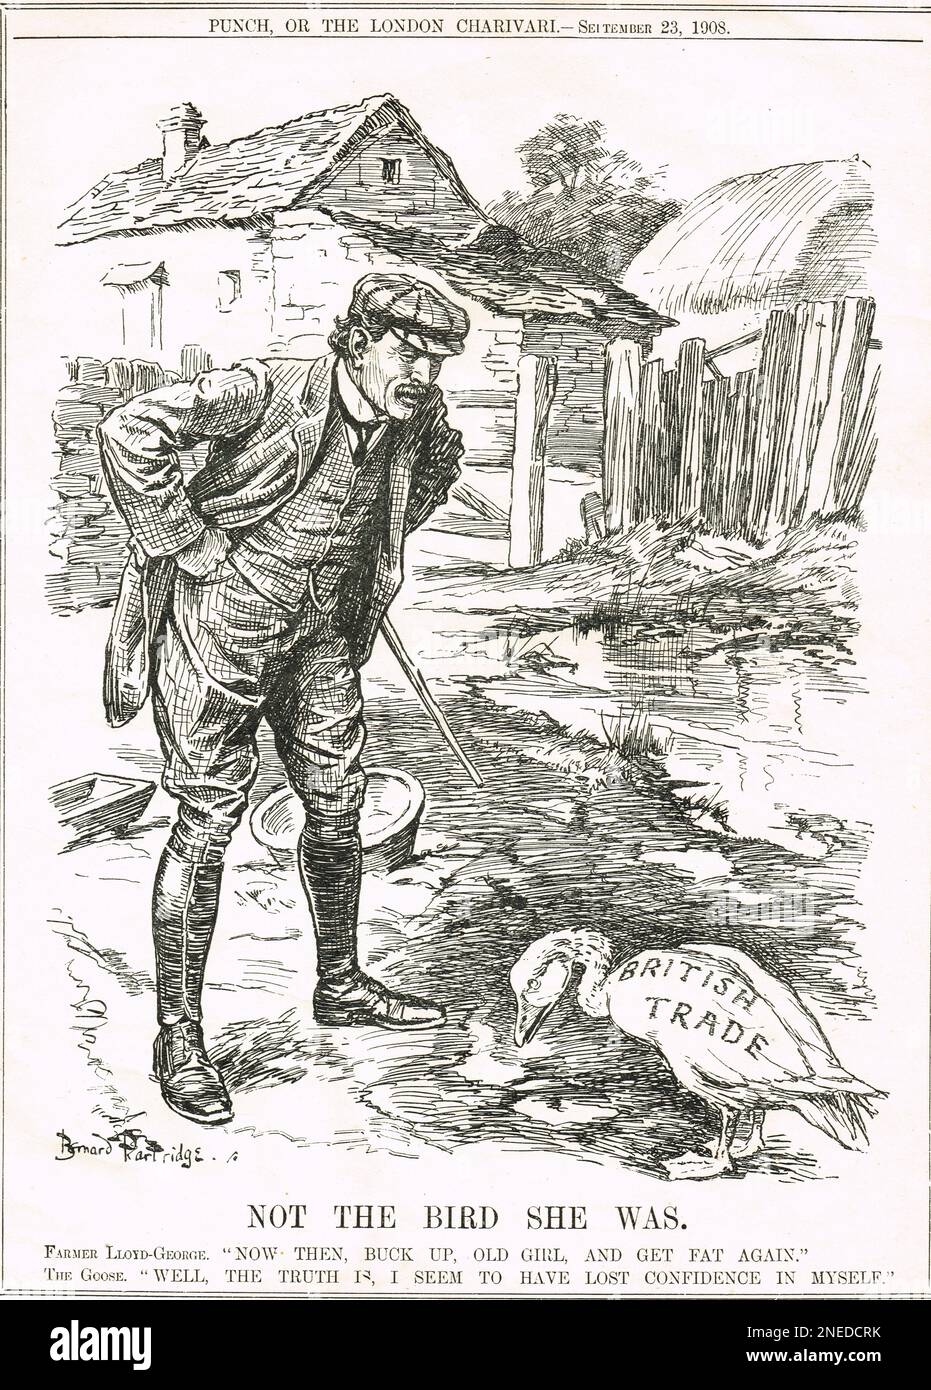 Pas l'oiseau qu'elle était. 1908 dessin animé de Punch par Bernard Partridge représentant Lloyd George comme un fermier racontant l'OIE du commerce britannique qui a perdu confiance pour obtenir de nouveau la graisse Banque D'Images